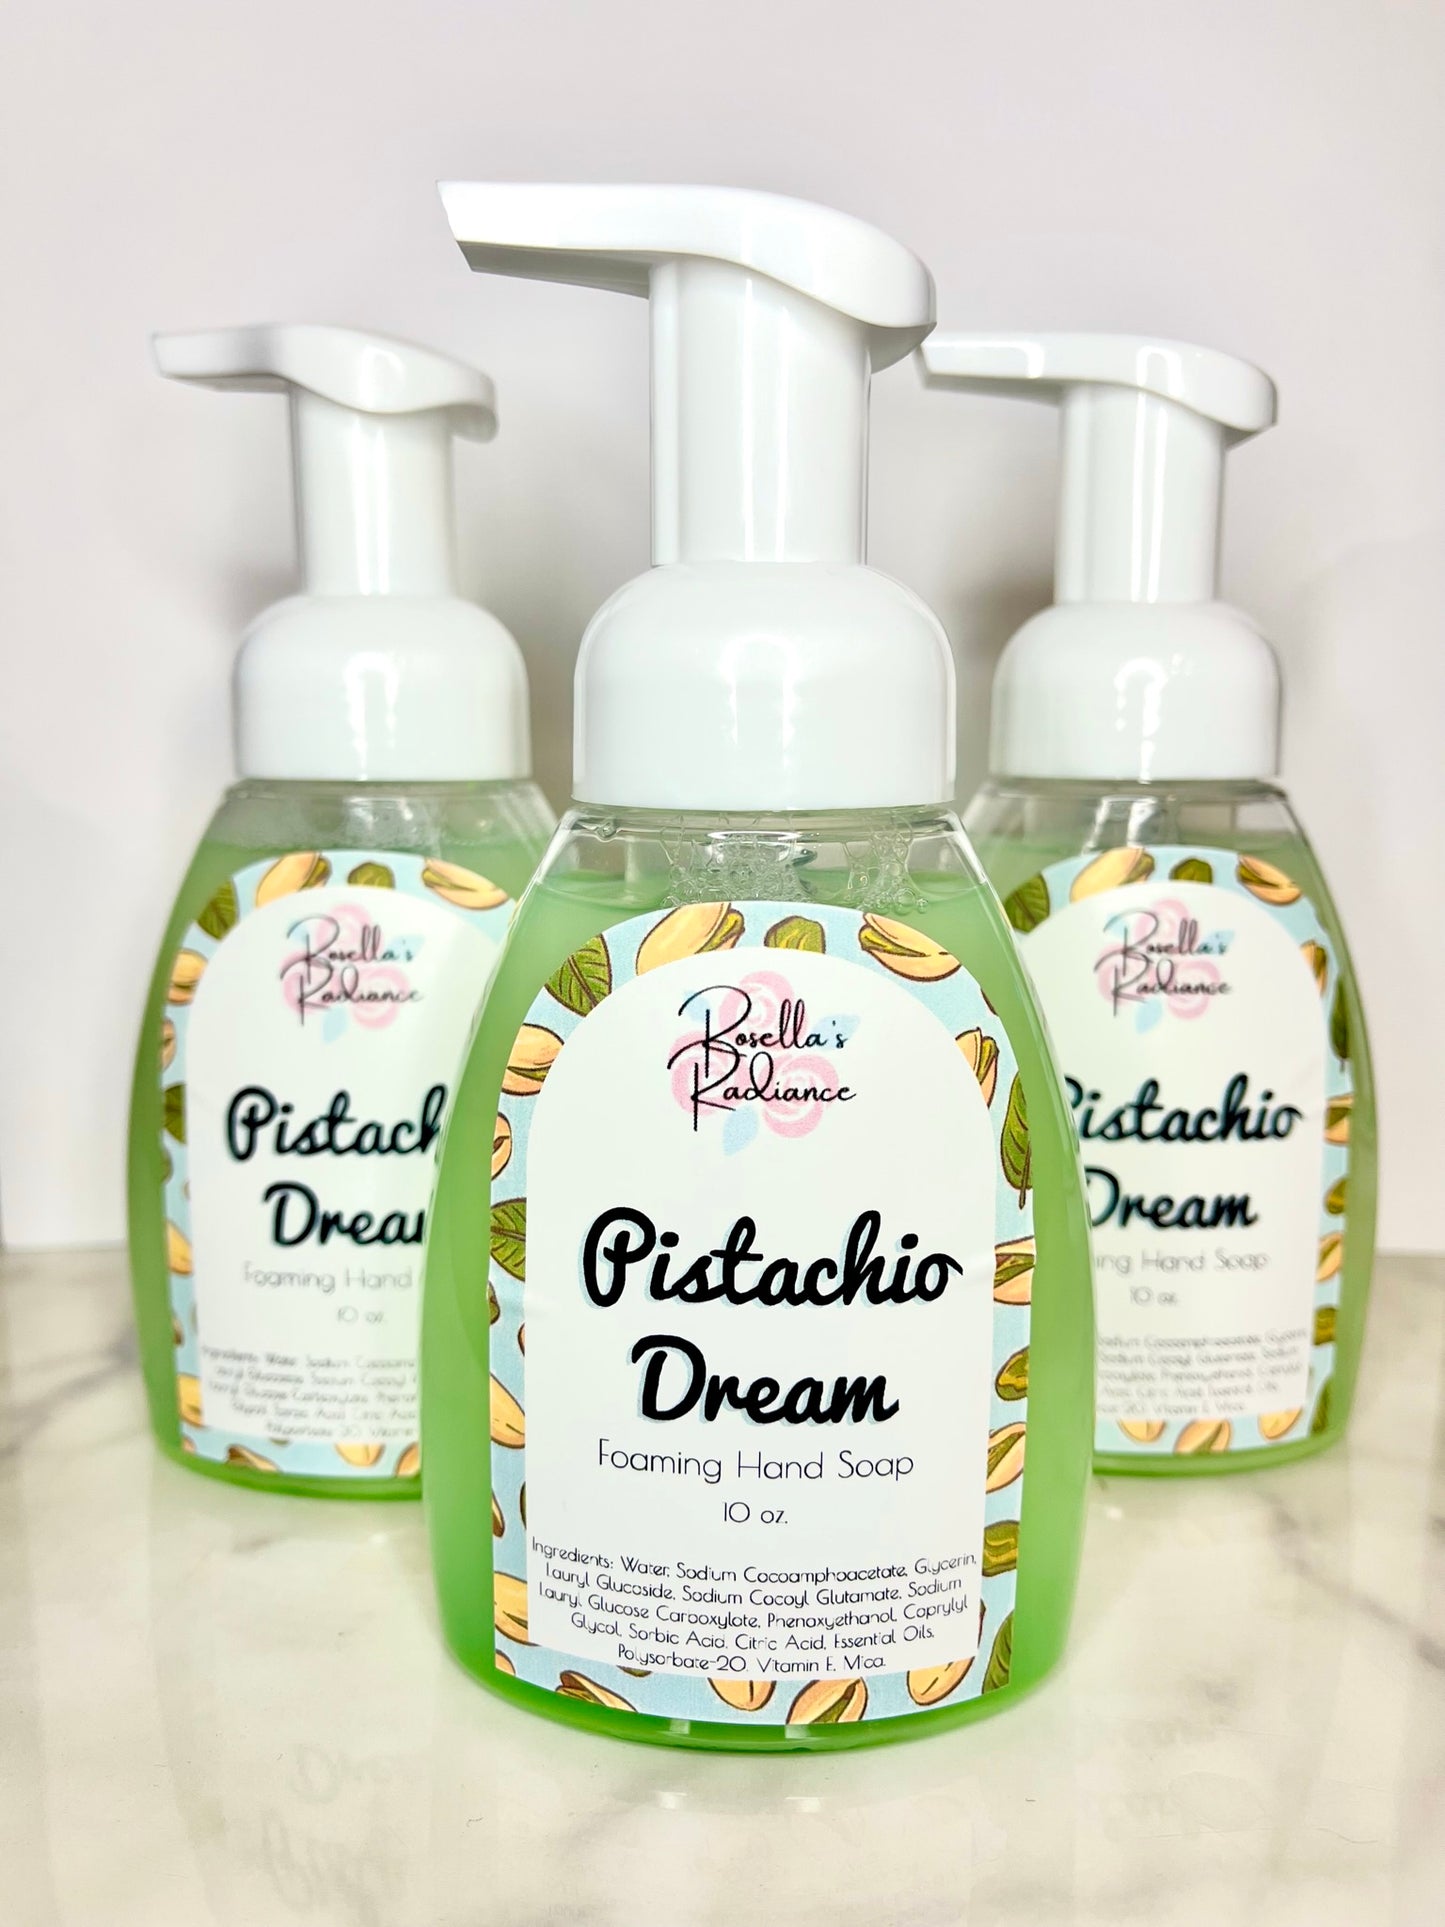 Pistachio Dream Foaming Hand Soap